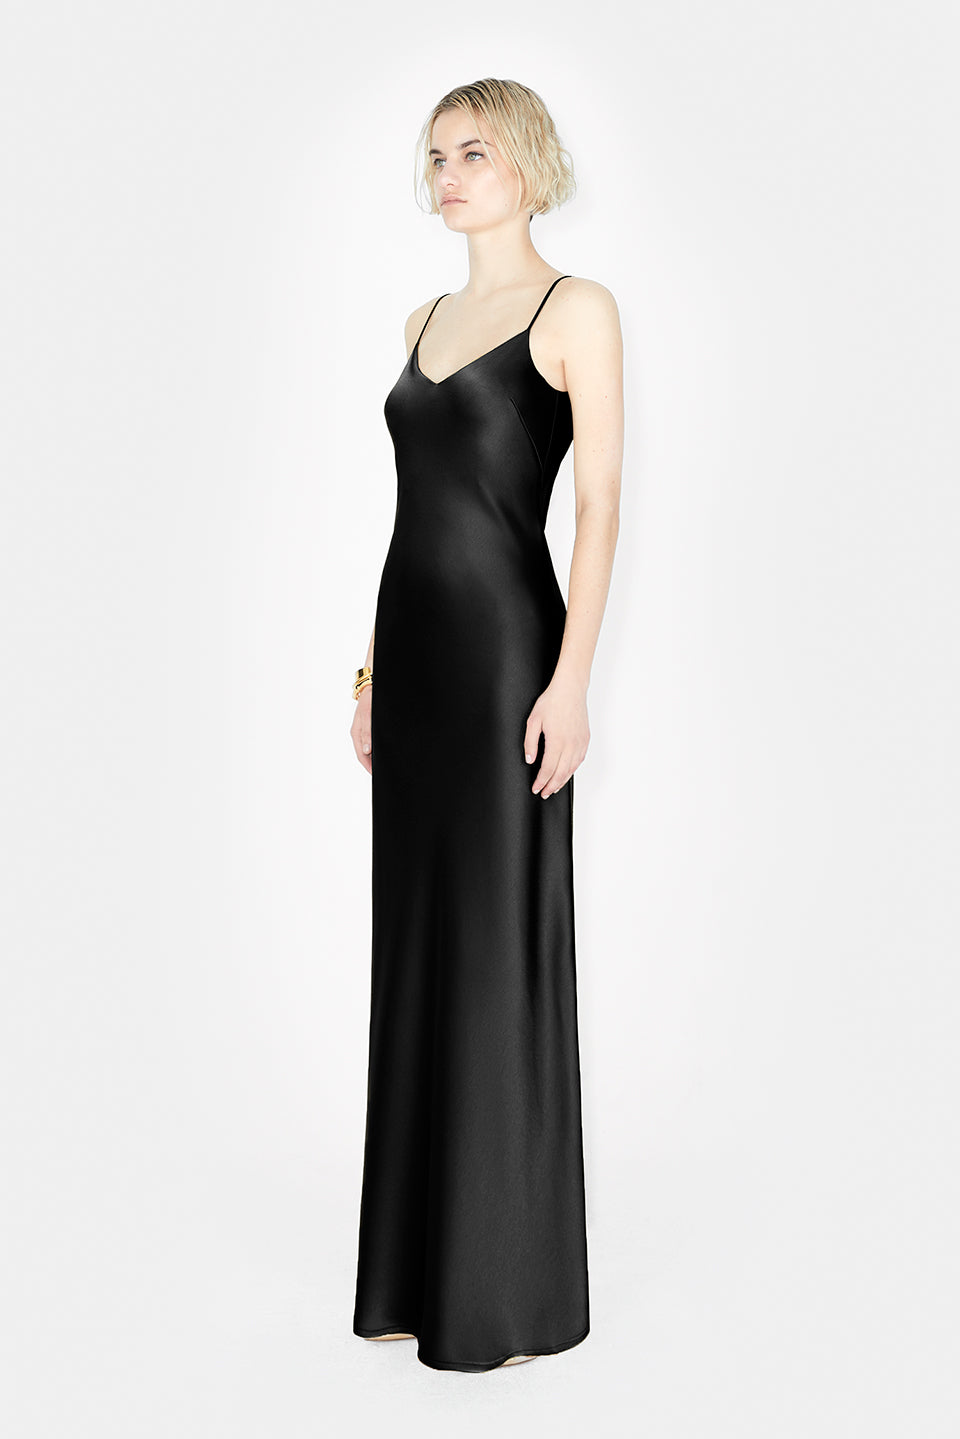 Designer Satin V Neck Slip Black Dress | Luxury Eveningwear Dresses ...